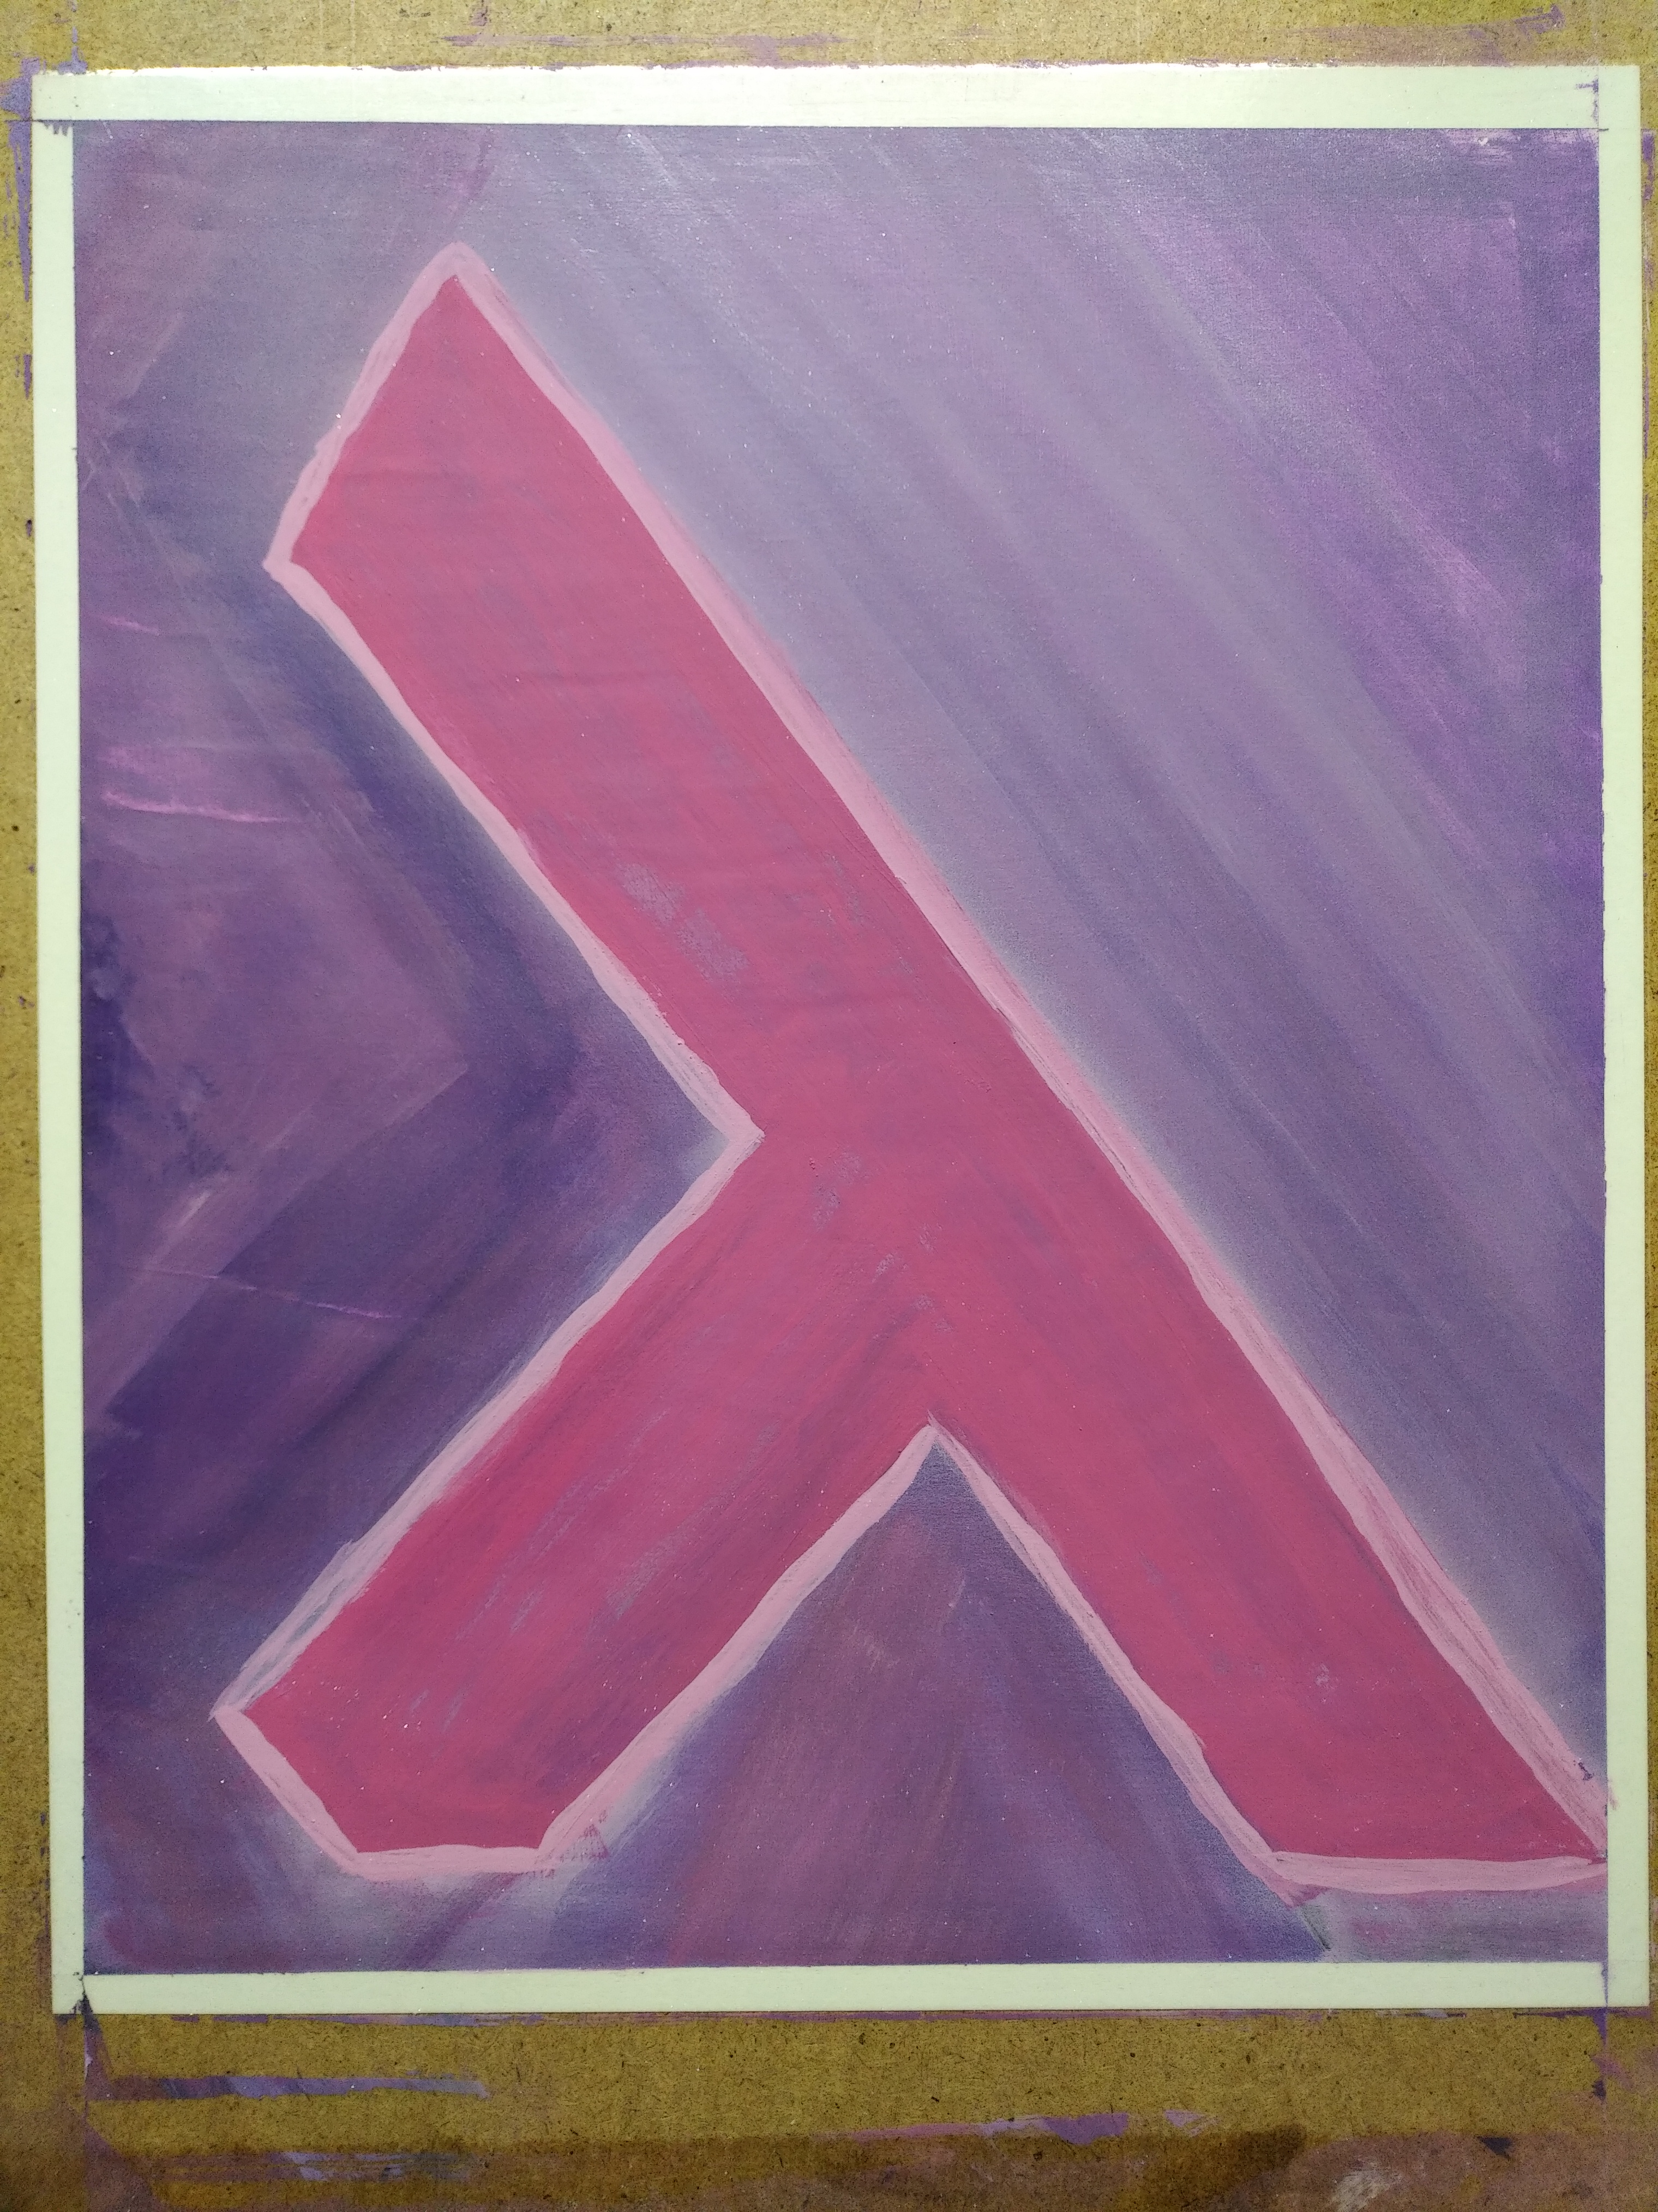 a purple painting of a nixos style lambda